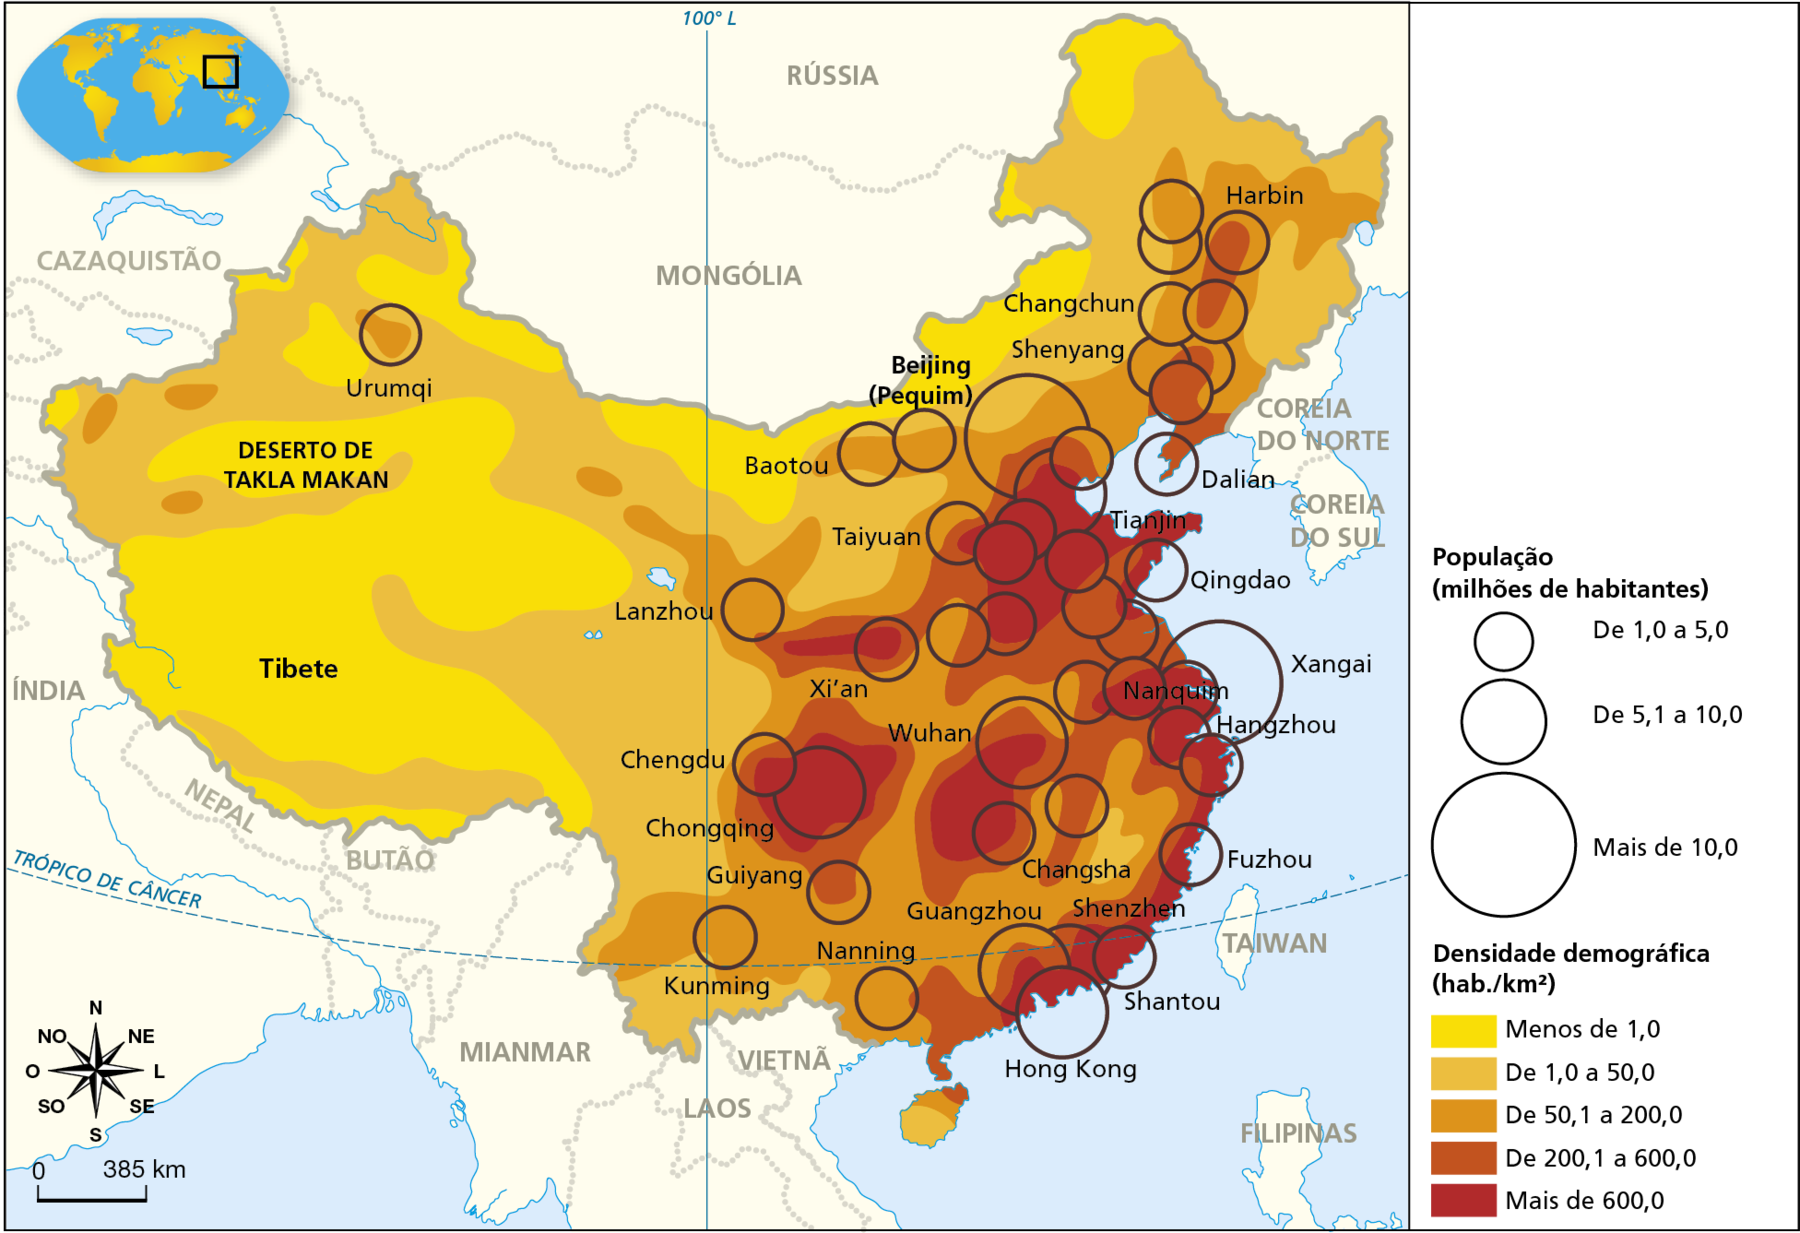 Mapa. China: população – 2018. Mapa do território da China demarcando as áreas com diferentes níveis de densidade demográfica, em habitantes por quilômetro quadrado. Essas áreas estão destacadas em tonalidades de cor que variam do mais claro, em amarelo (áreas de densidade mais baixa), para o mais escuro, em vermelho (áreas de densidade elevada). O mapa também localiza as principais aglomerações de habitantes por meio de círculos proporcionais que variam de 1 até mais de 10 milhões habitantes. 
População (em milhões de habitantes):
De 1,0 a 5,0 milhões de habitantes: destaque para Harbin, Changchun, Shenyang, Baotou, Taiyuan, Lanzhou, Xi’an,  Urumqi, Chengdu, Kunming, Guiyang, Nanning, Changsha, Shantou, Fuzhou, Tianjin e Qingdao.
De 5,1 a 10,0 milhões de habitantes: destaque para Wuhan, Chongqing, Guangzhou e Hong Kong.
Mais de 10,0 milhões de habitantes: Pequim e Xangai.
Densidade demográfica (em habitantes por quilômetro quadrado):
Menos de 1,0: predominante nas porções Oeste e Norte.
De 1,0 a 50,0: predominante no centro-leste e Nordeste.
De 50,1 a 200,0: predominante no centro-leste e Nordeste.
De 200,1 a 600,0: predominante no centro-leste e Nordeste.
Mais de 600,0: predominante no centro-leste e faixa litorânea.
Na parte inferior esquerda, a rosa dos ventos a escala de 0 a 385 quilômetros.